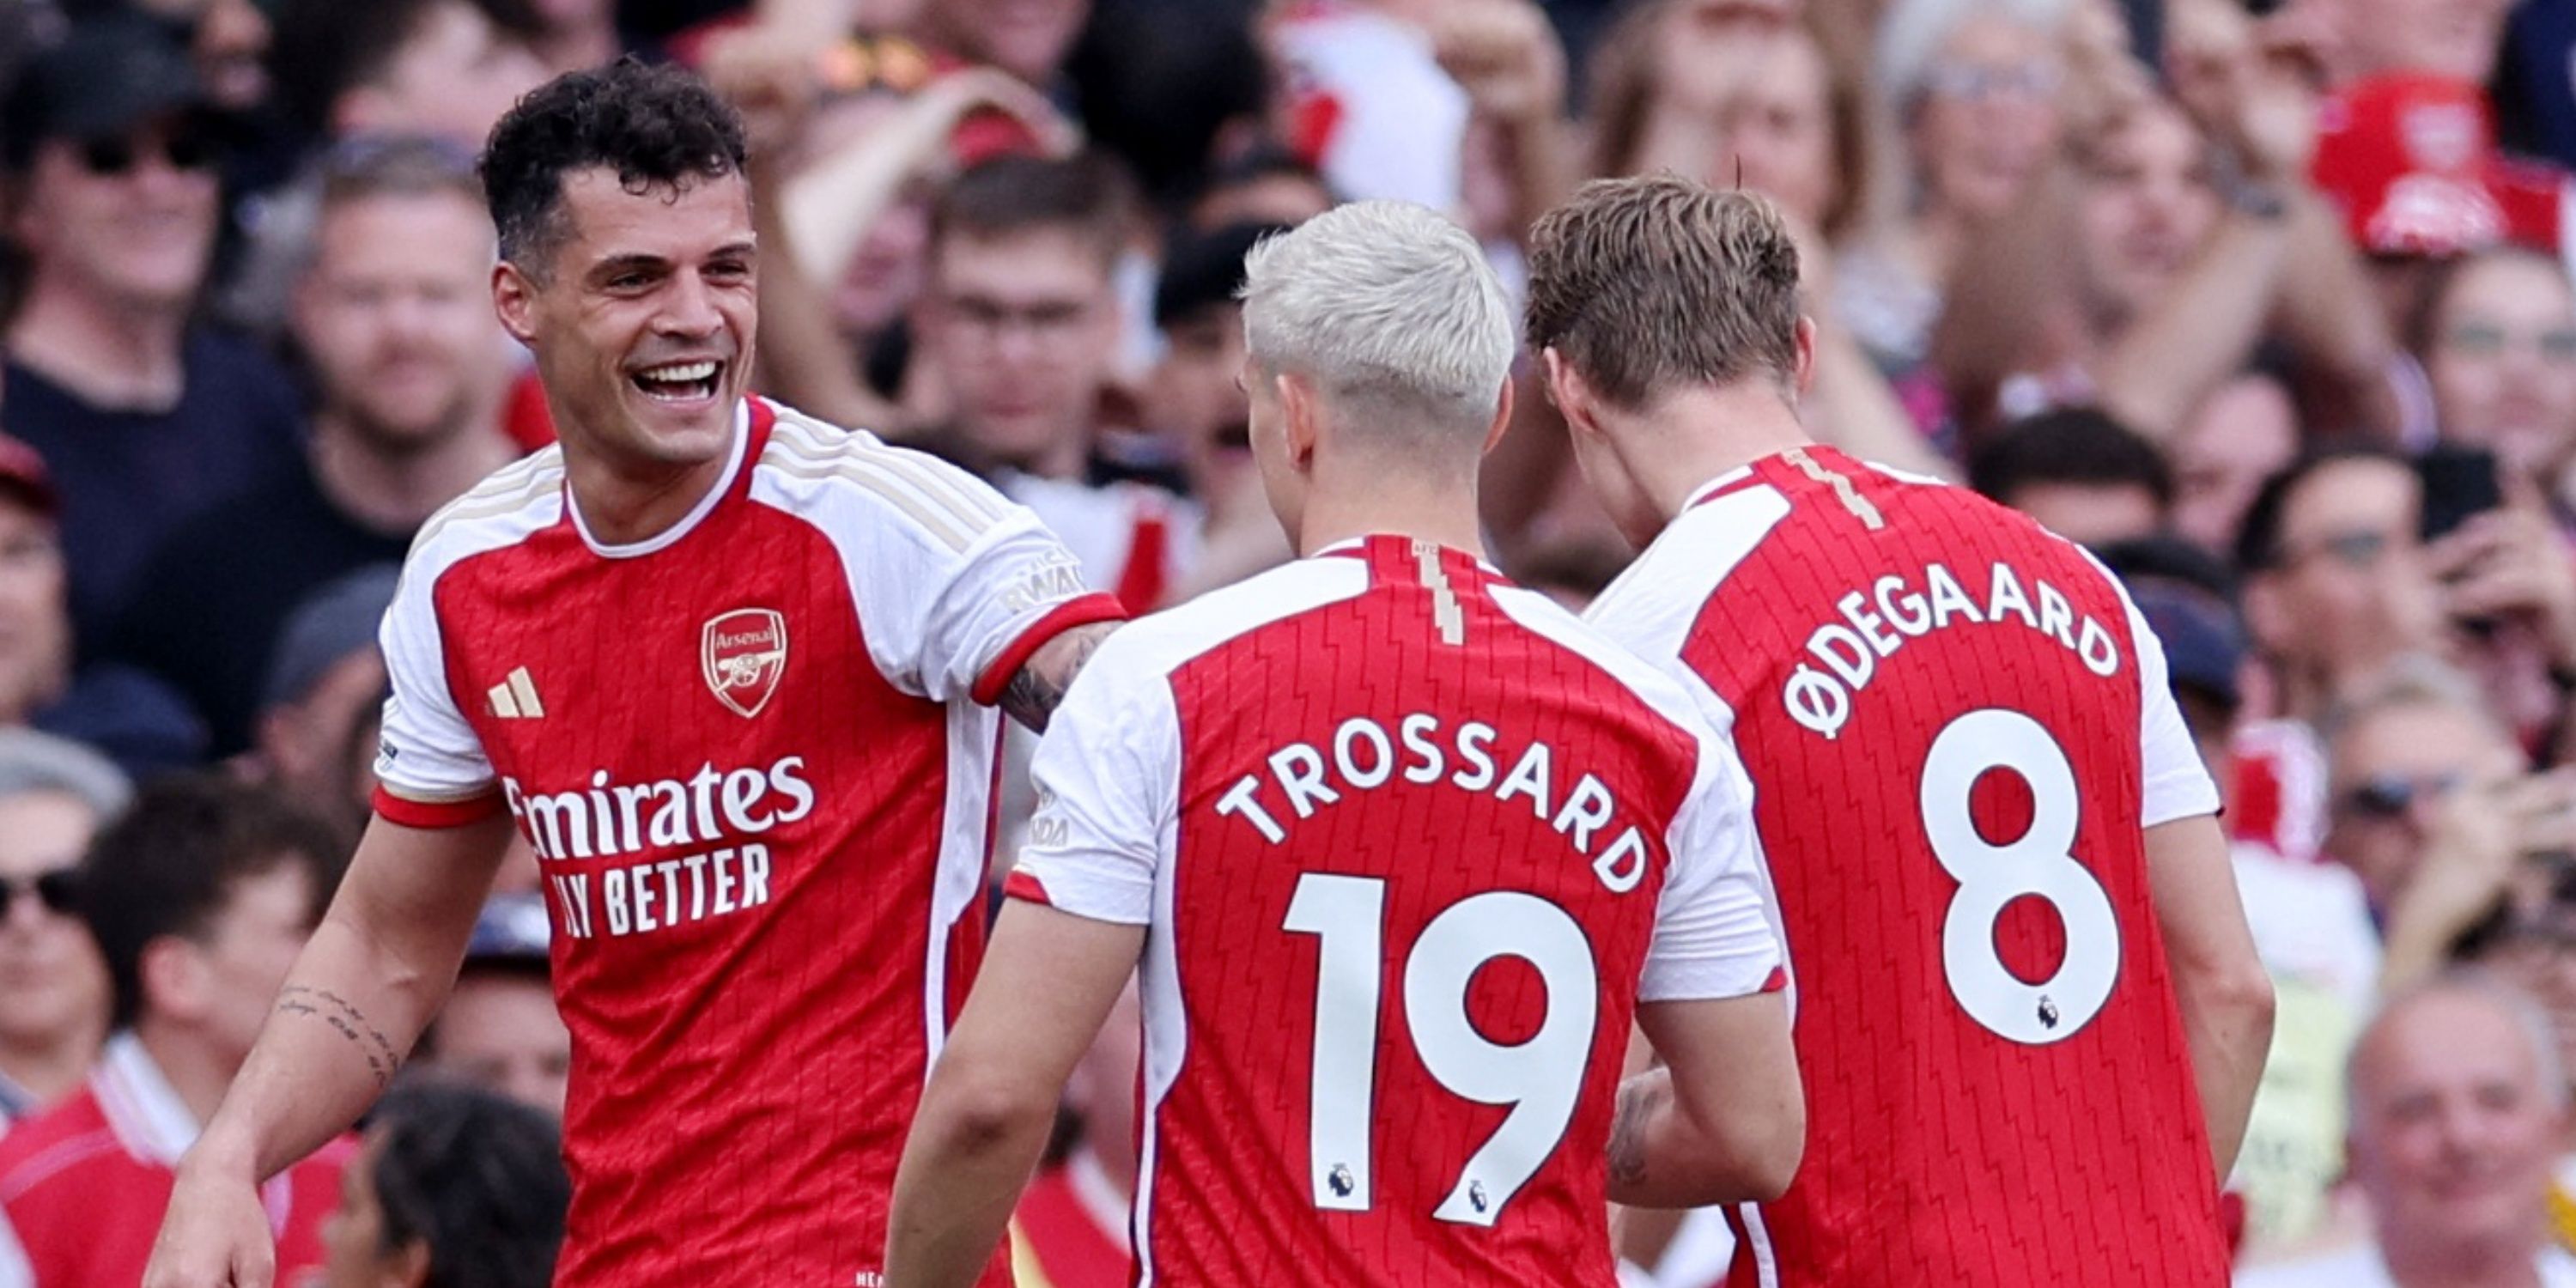 Granit Xhaka celebrates scoring in his final Arsenal game